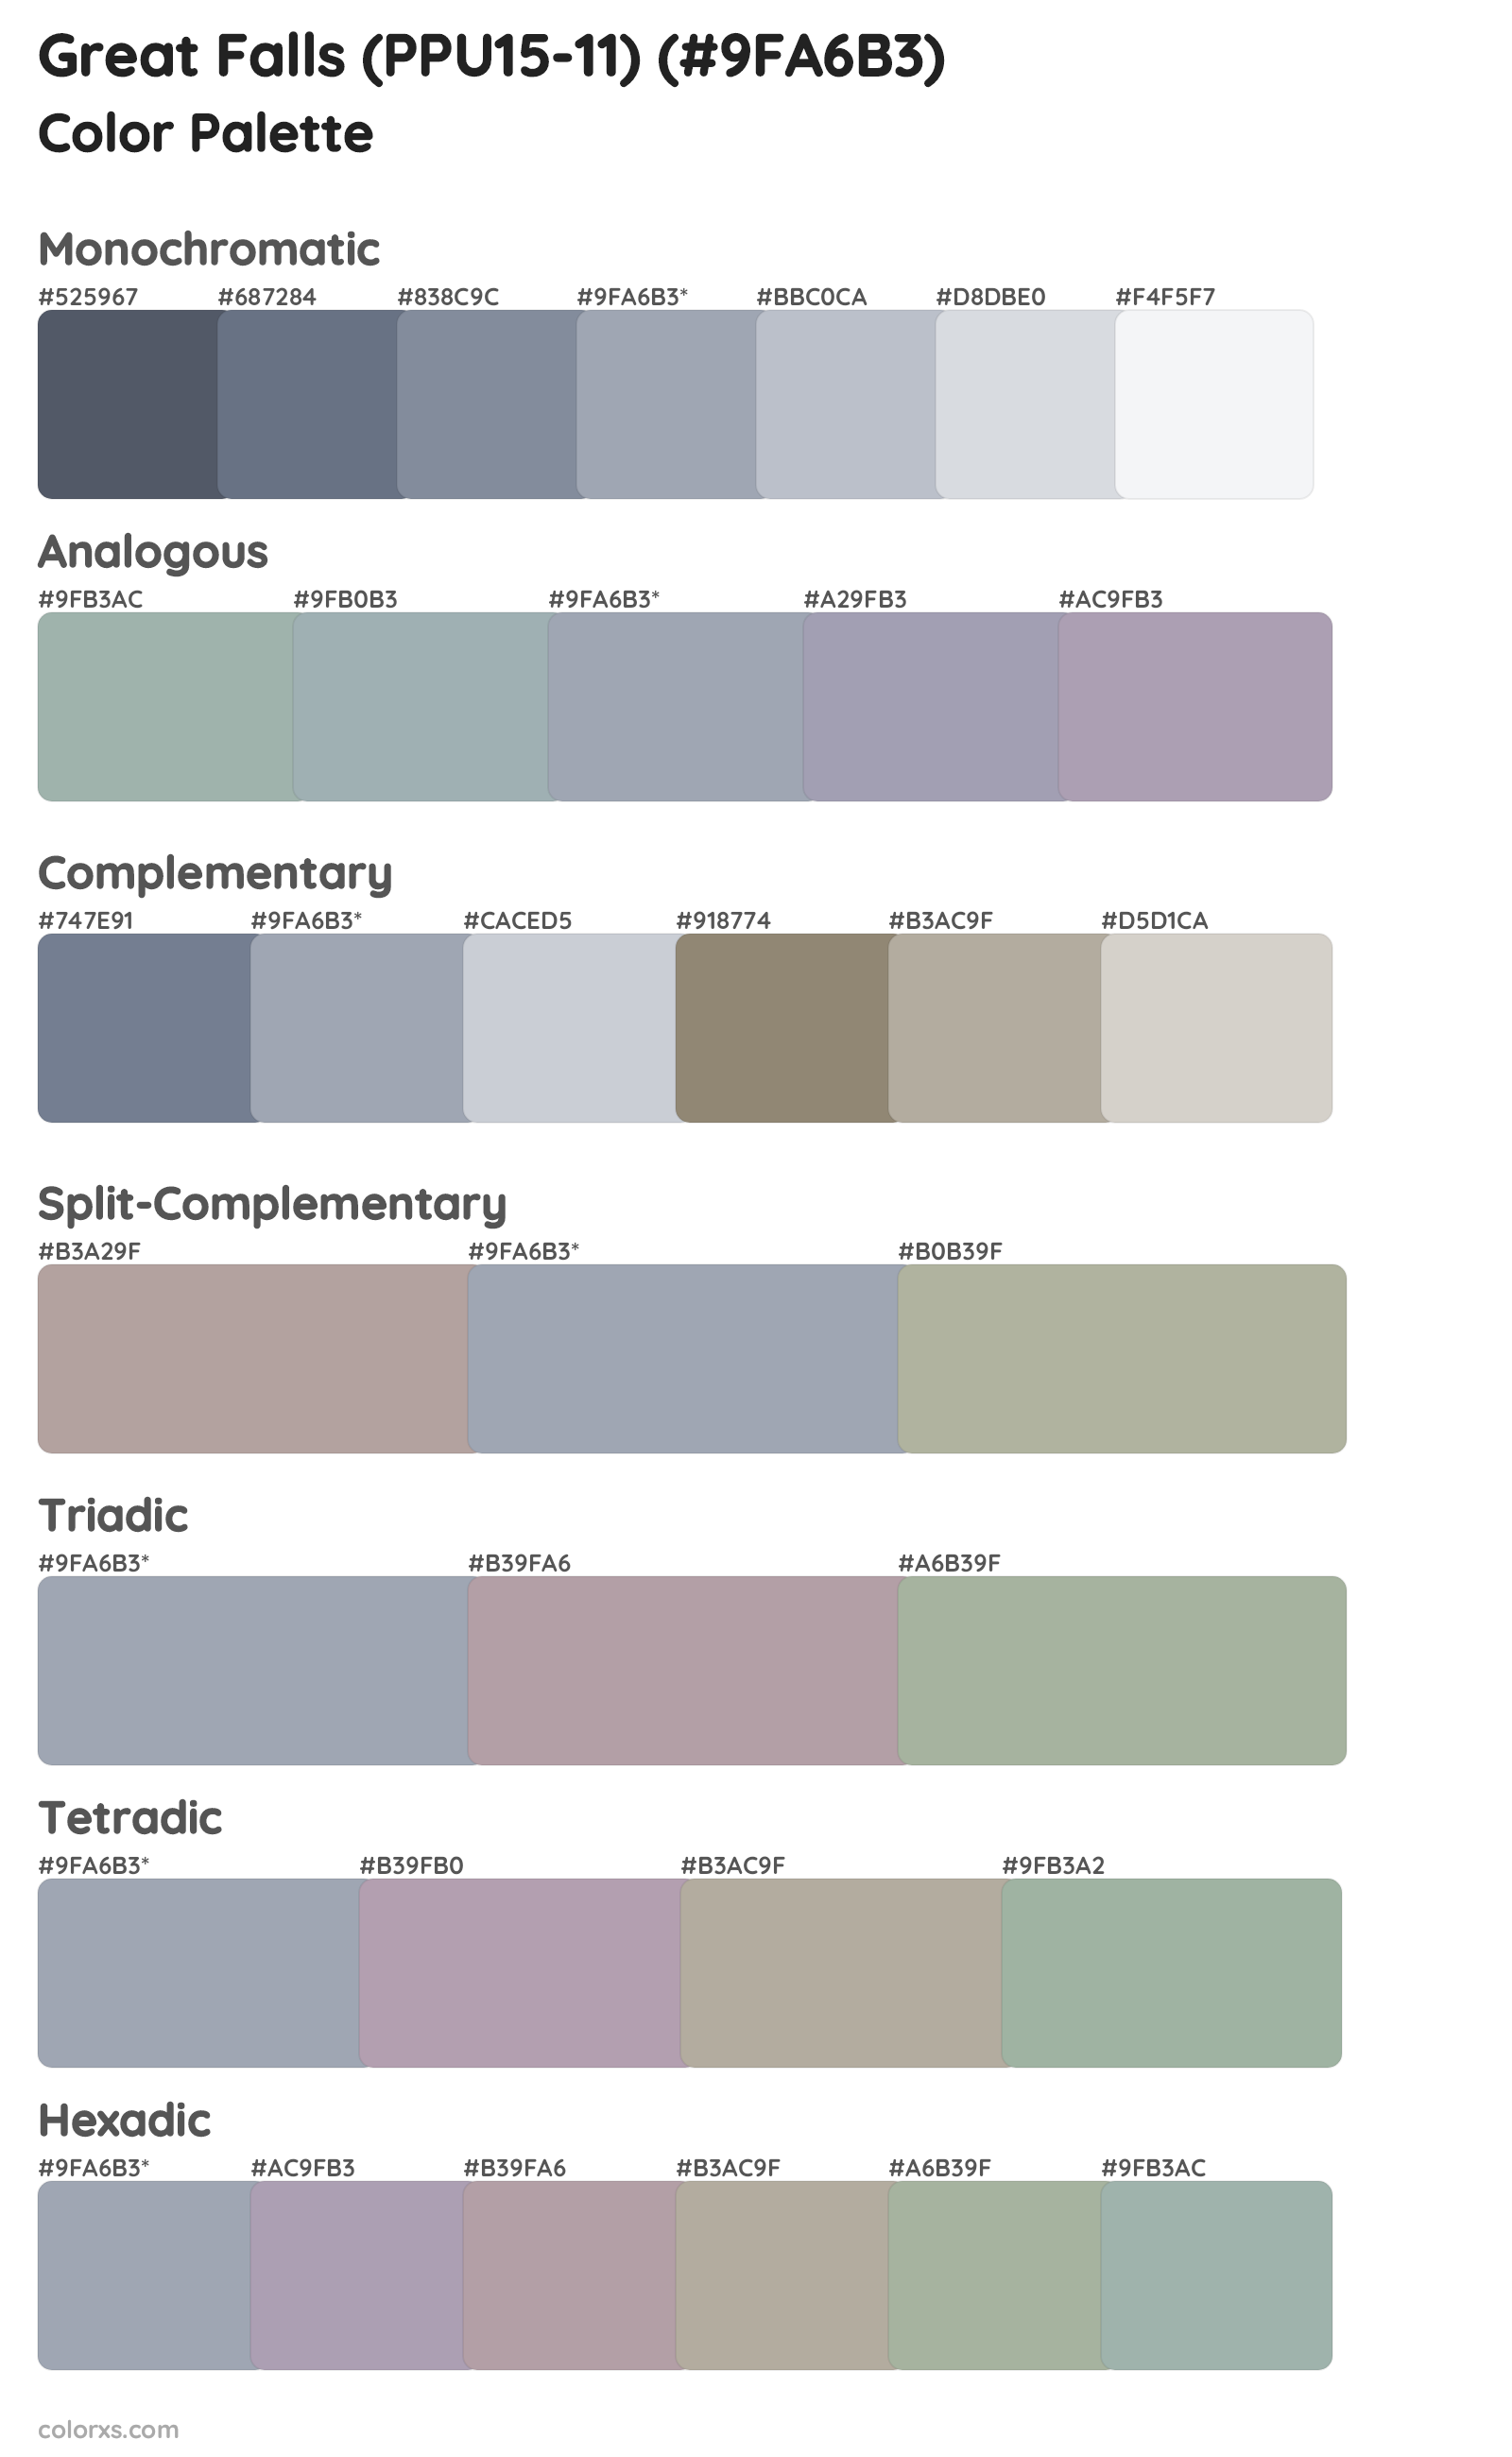 Great Falls (PPU15-11) Color Scheme Palettes